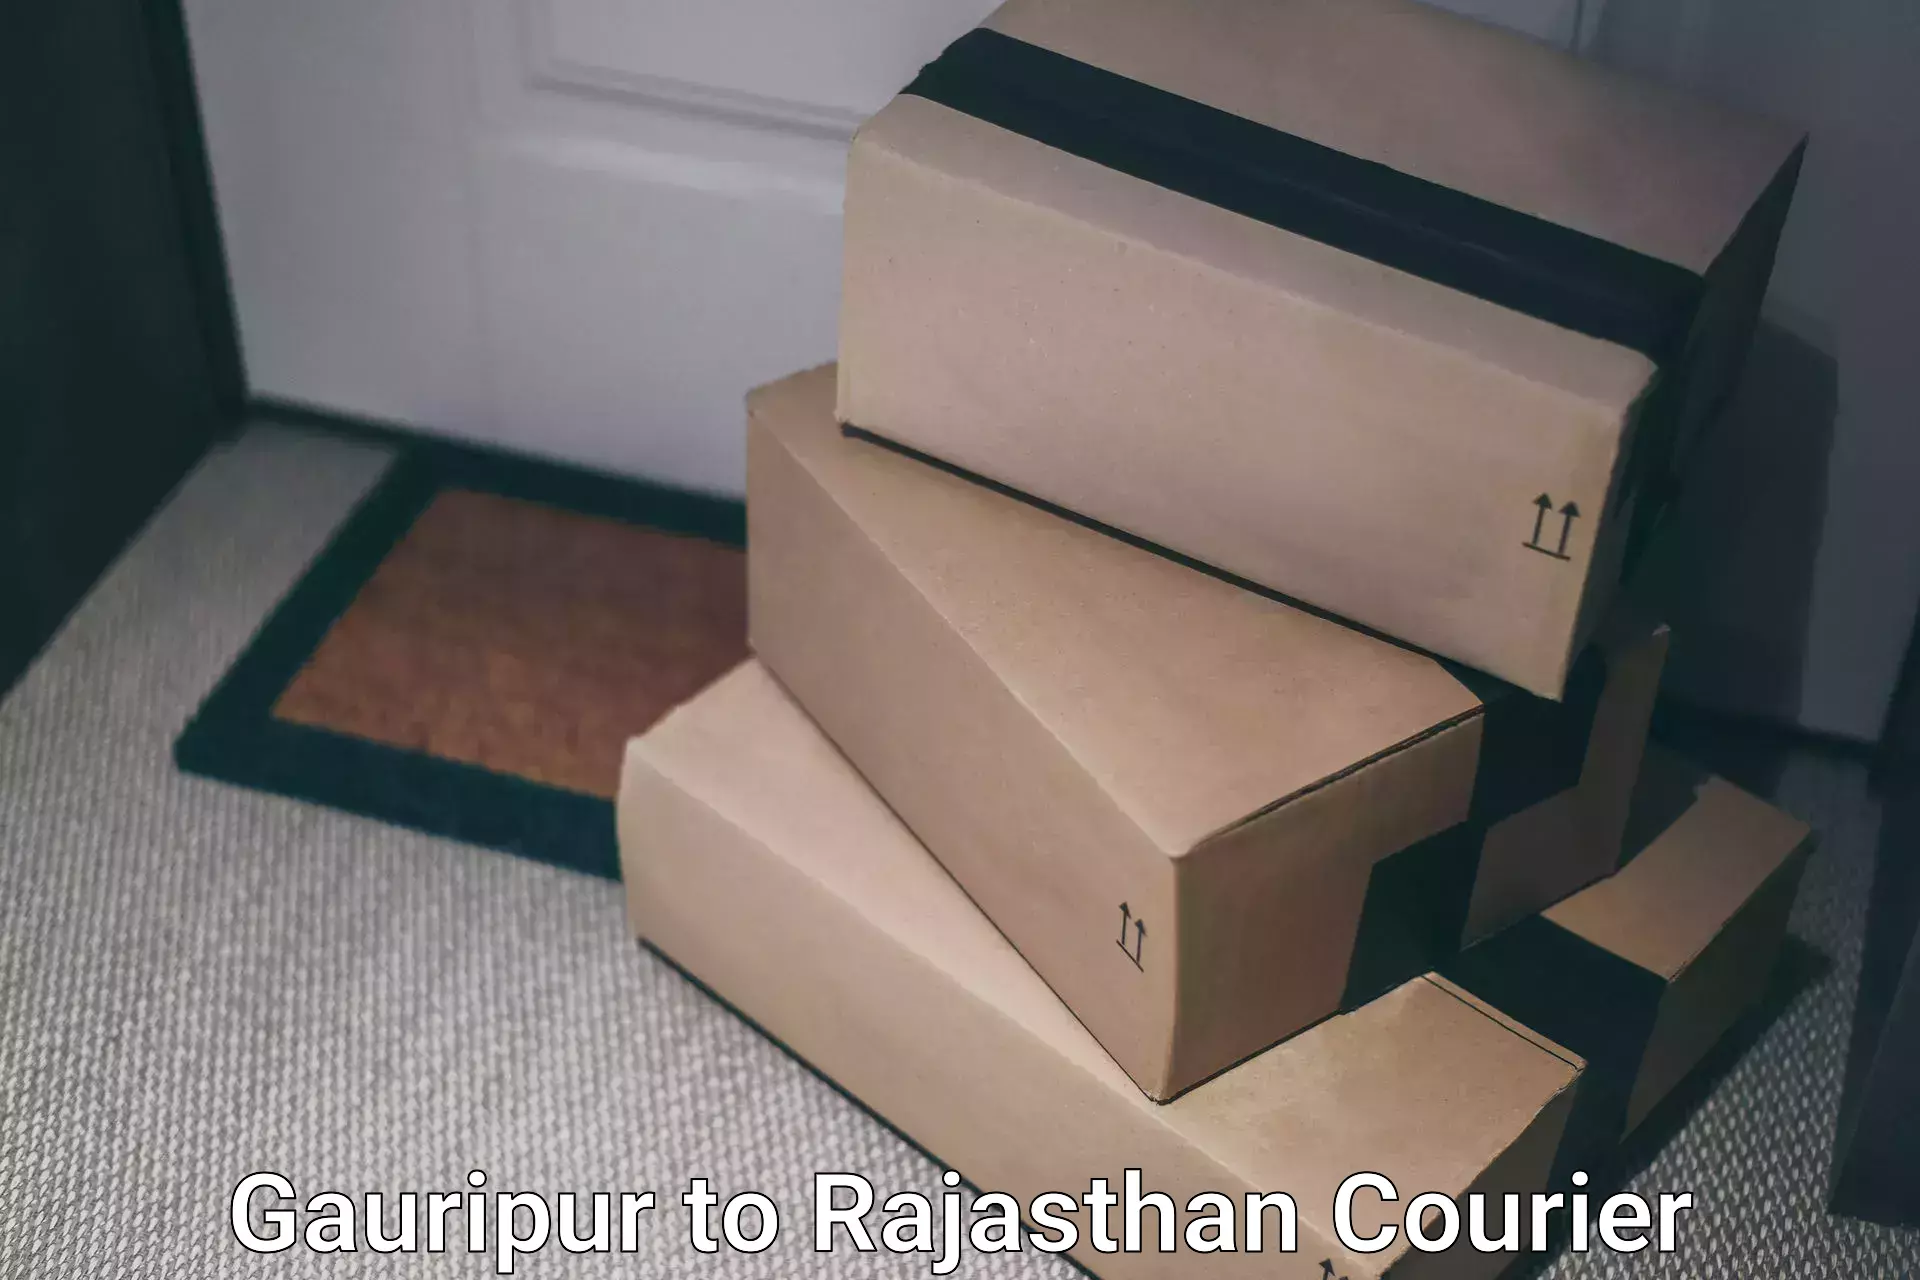 Efficient parcel service Gauripur to Malpura